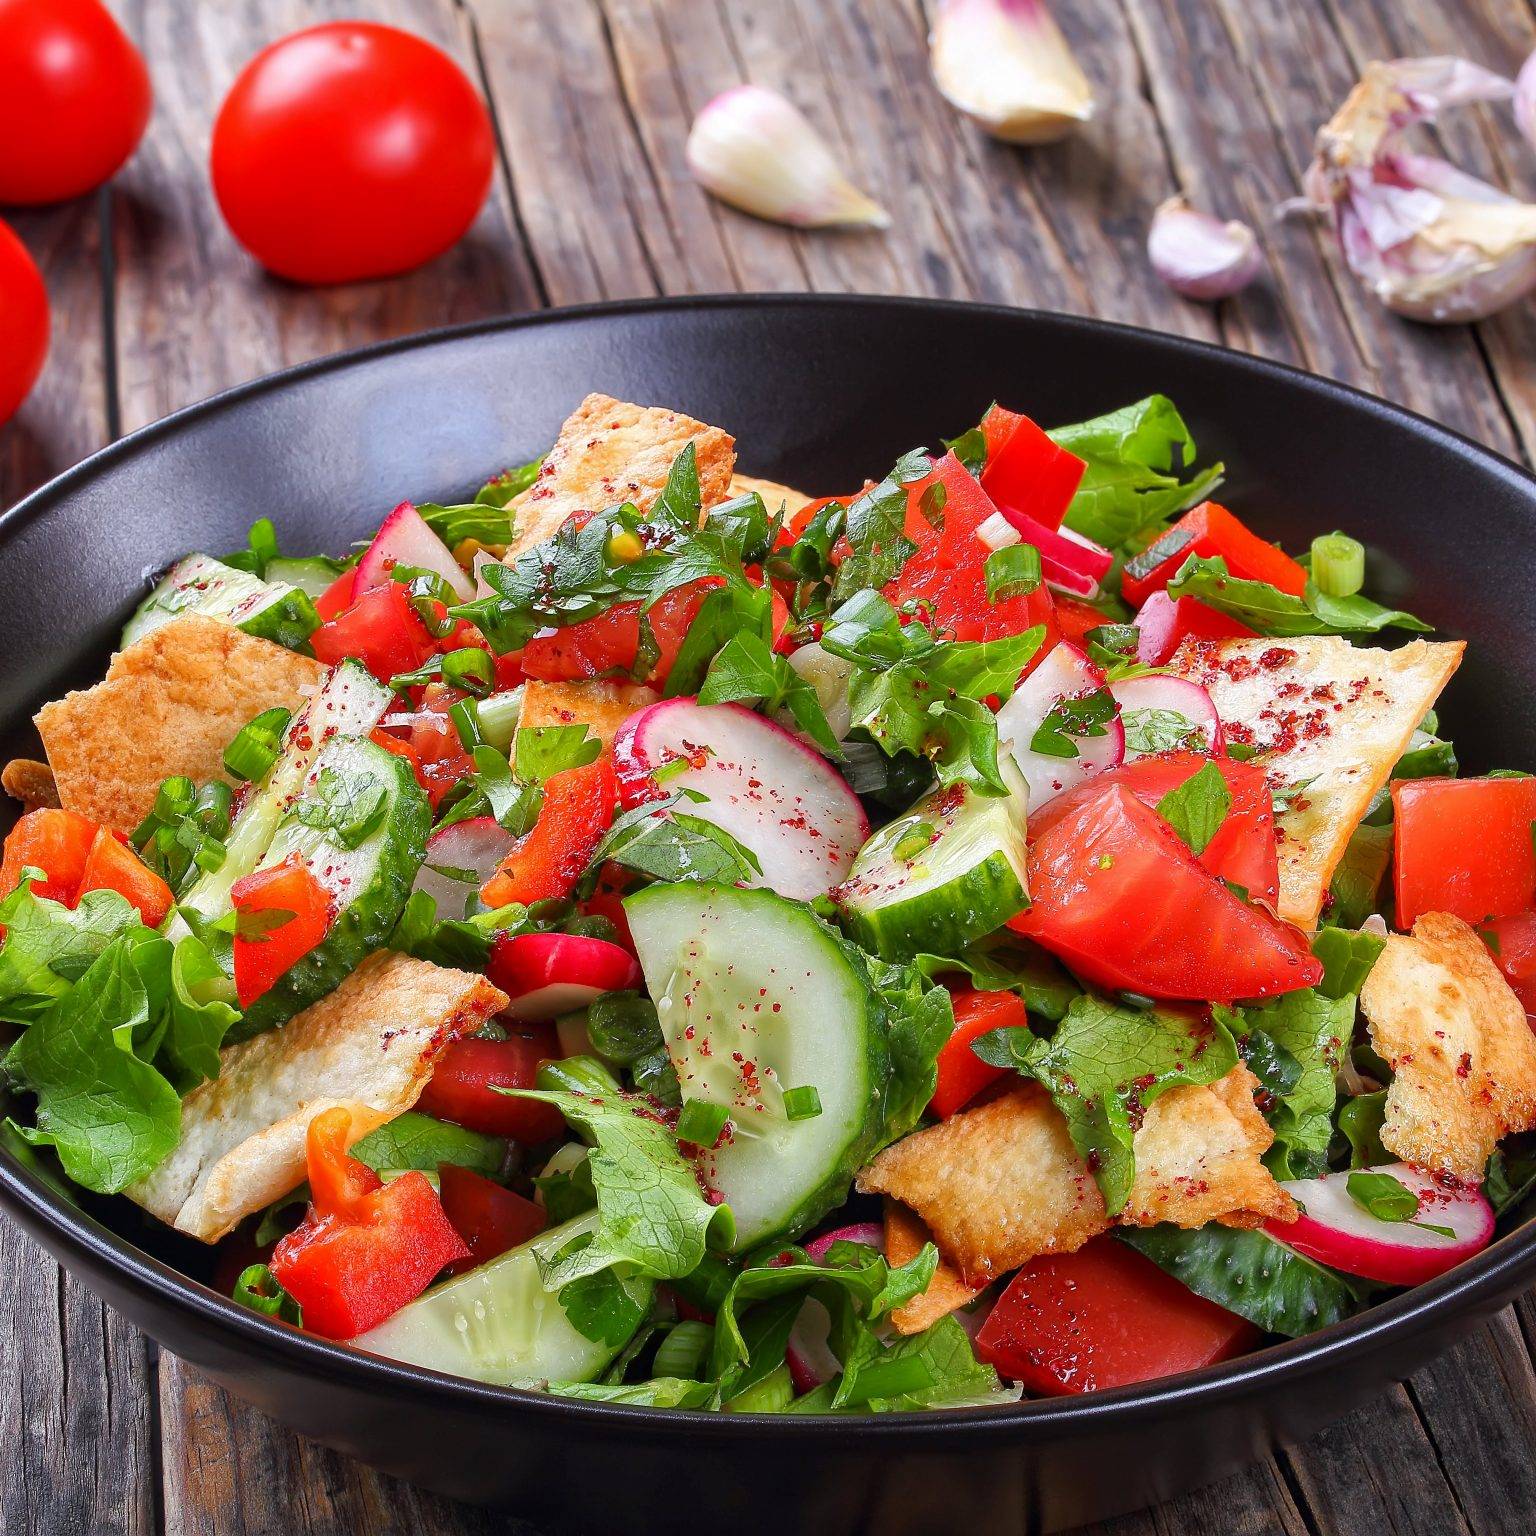 Фаттуш - ливанский салат из овощей